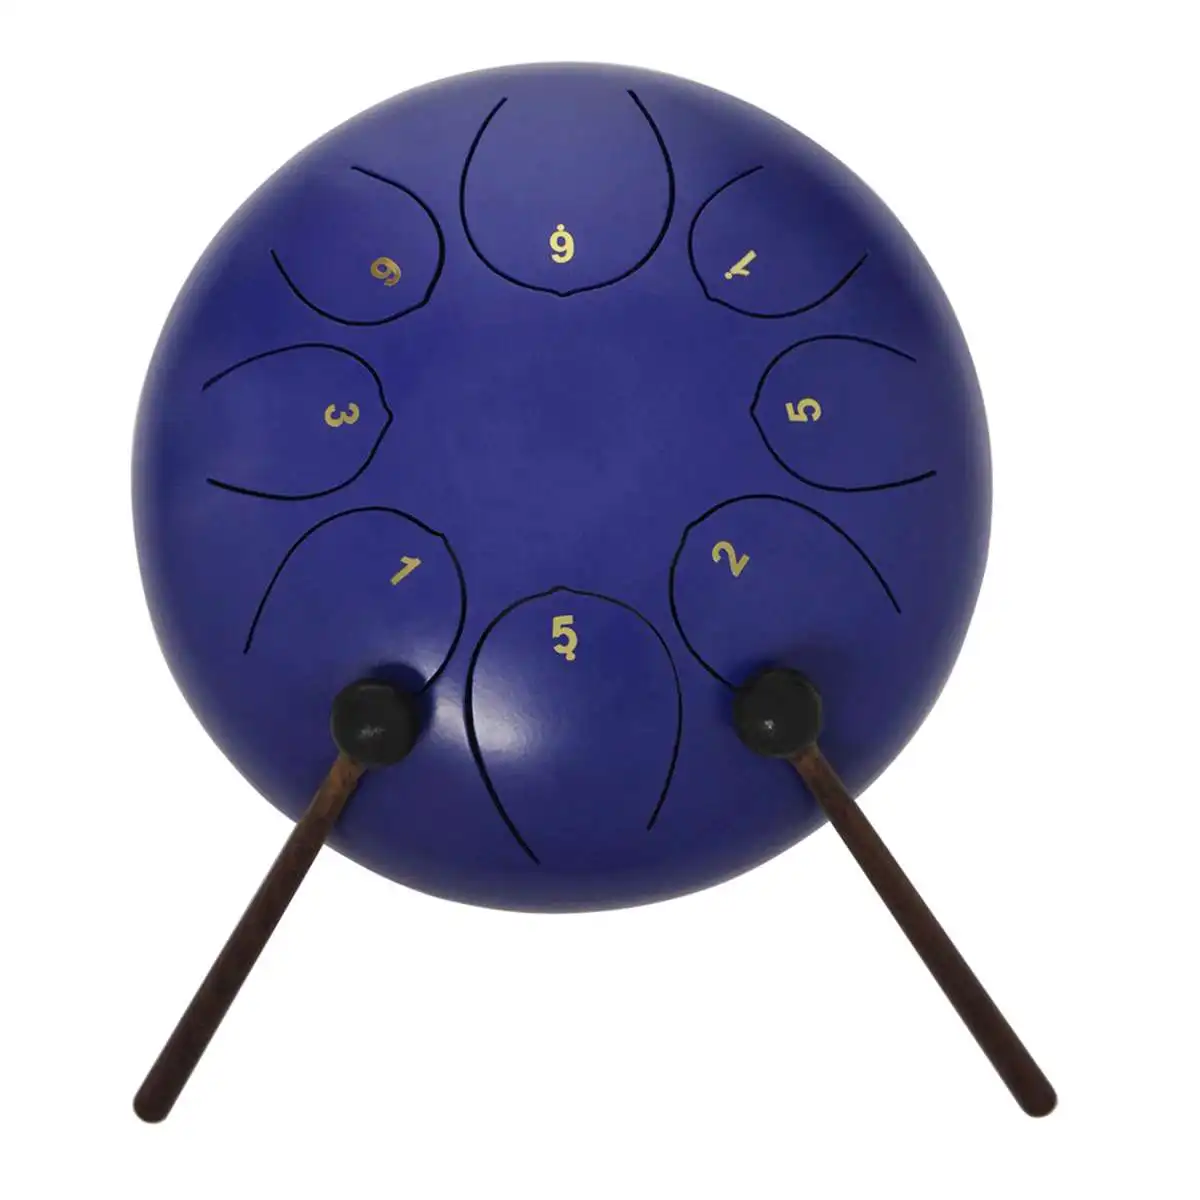 10 дюймов стальной язык барабан 8 тон G Мелодия ручной Pan барабан бак повесить барабан с барабанчиками сумка для переноски ударные инструменты - Цвет: Blue